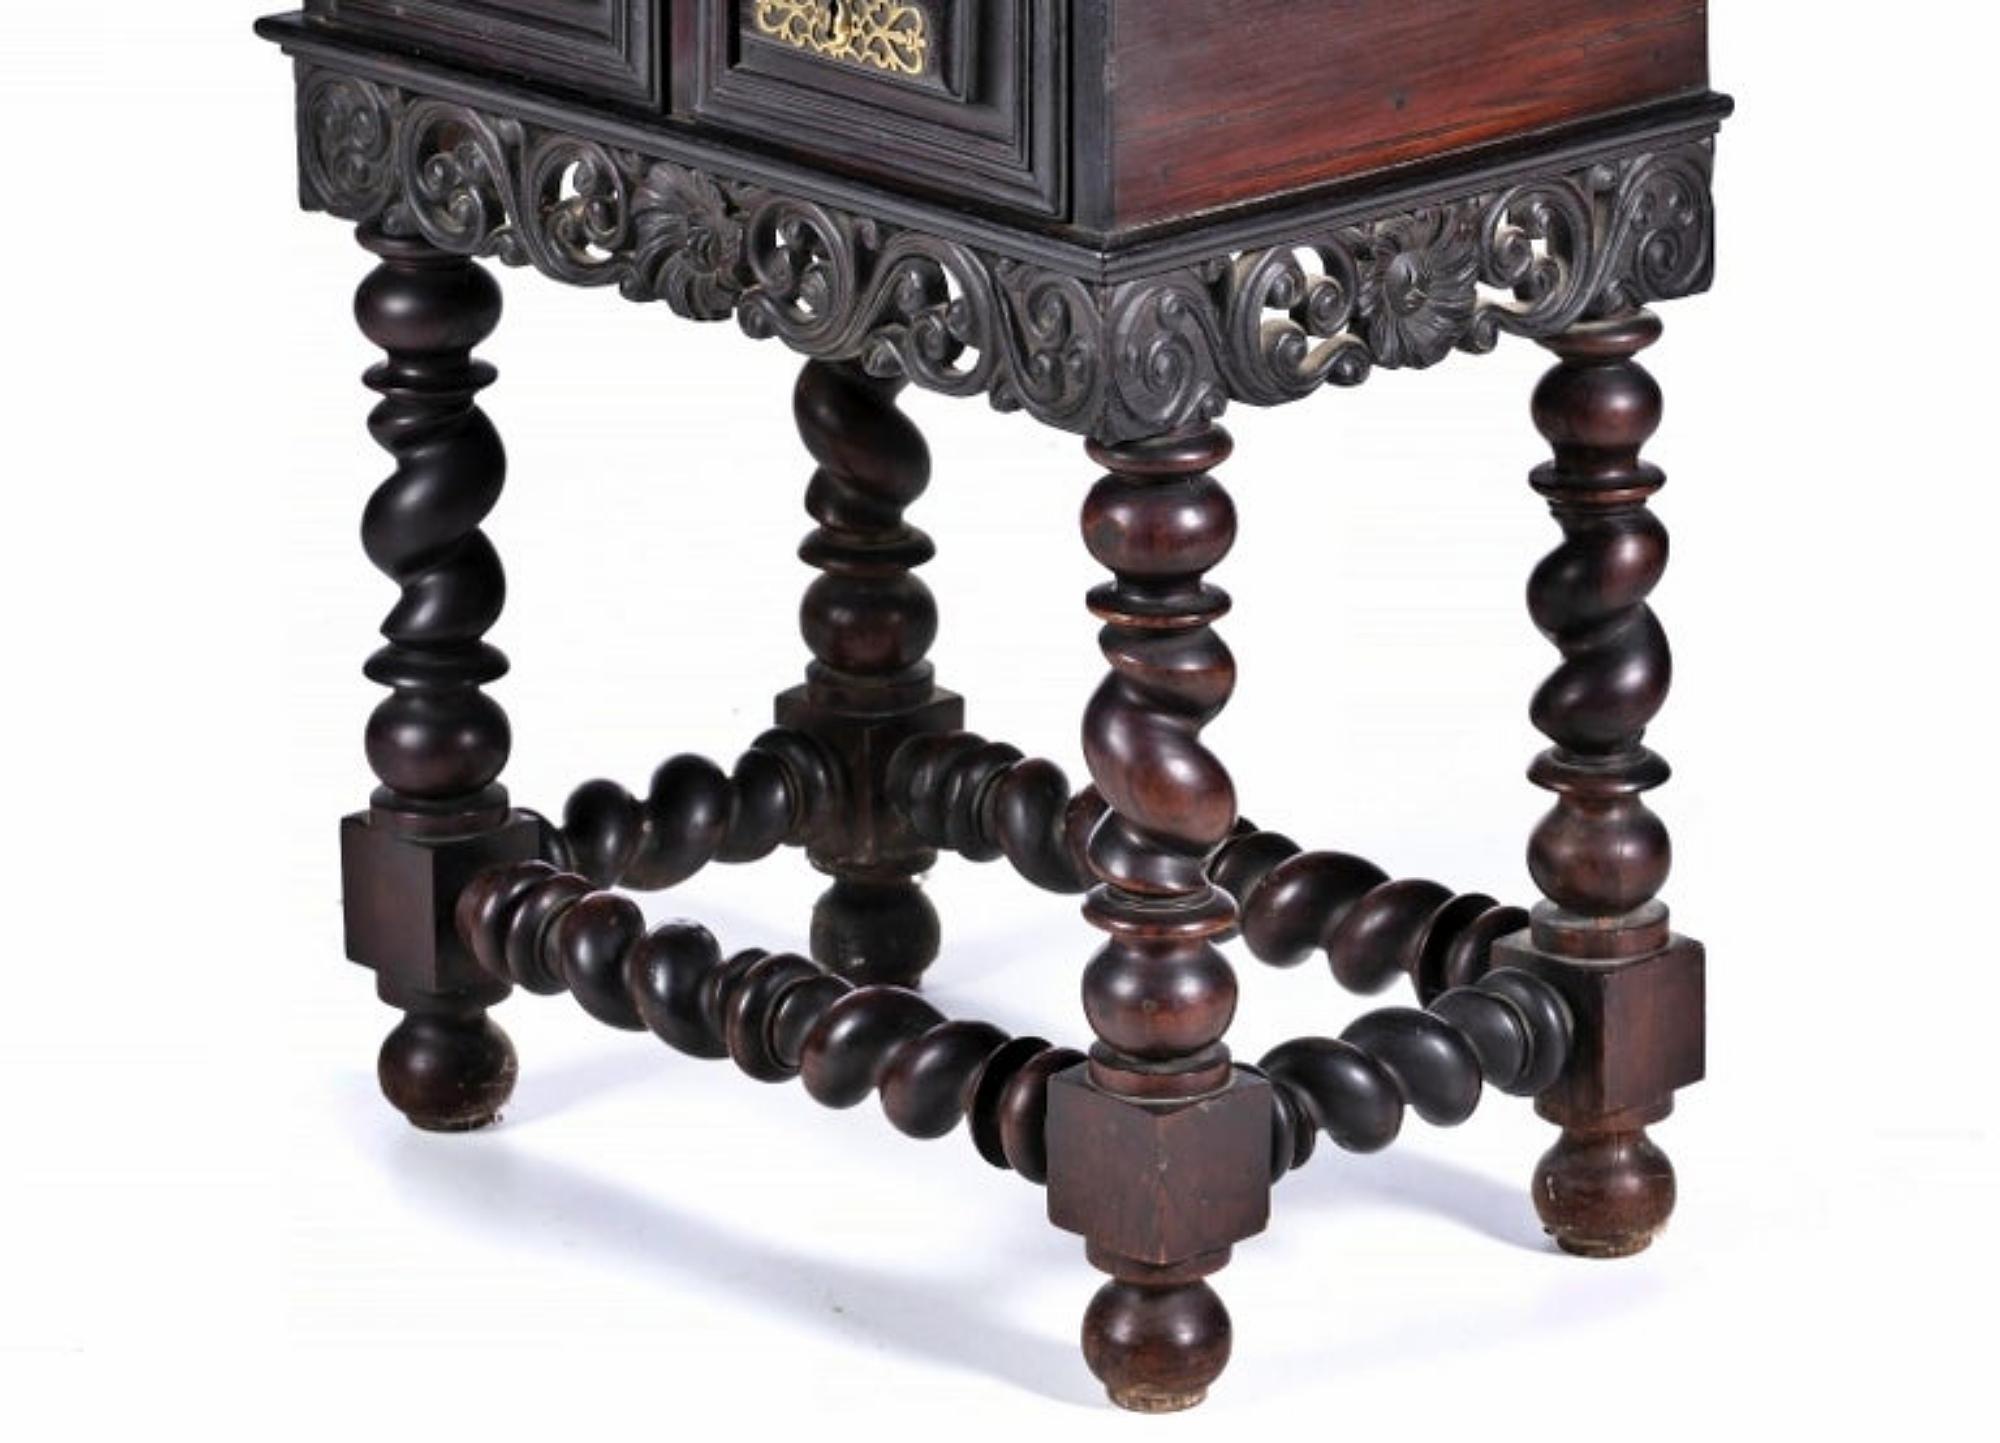 Baroque Rare Portuguese 18th Century Cabinet For Sale